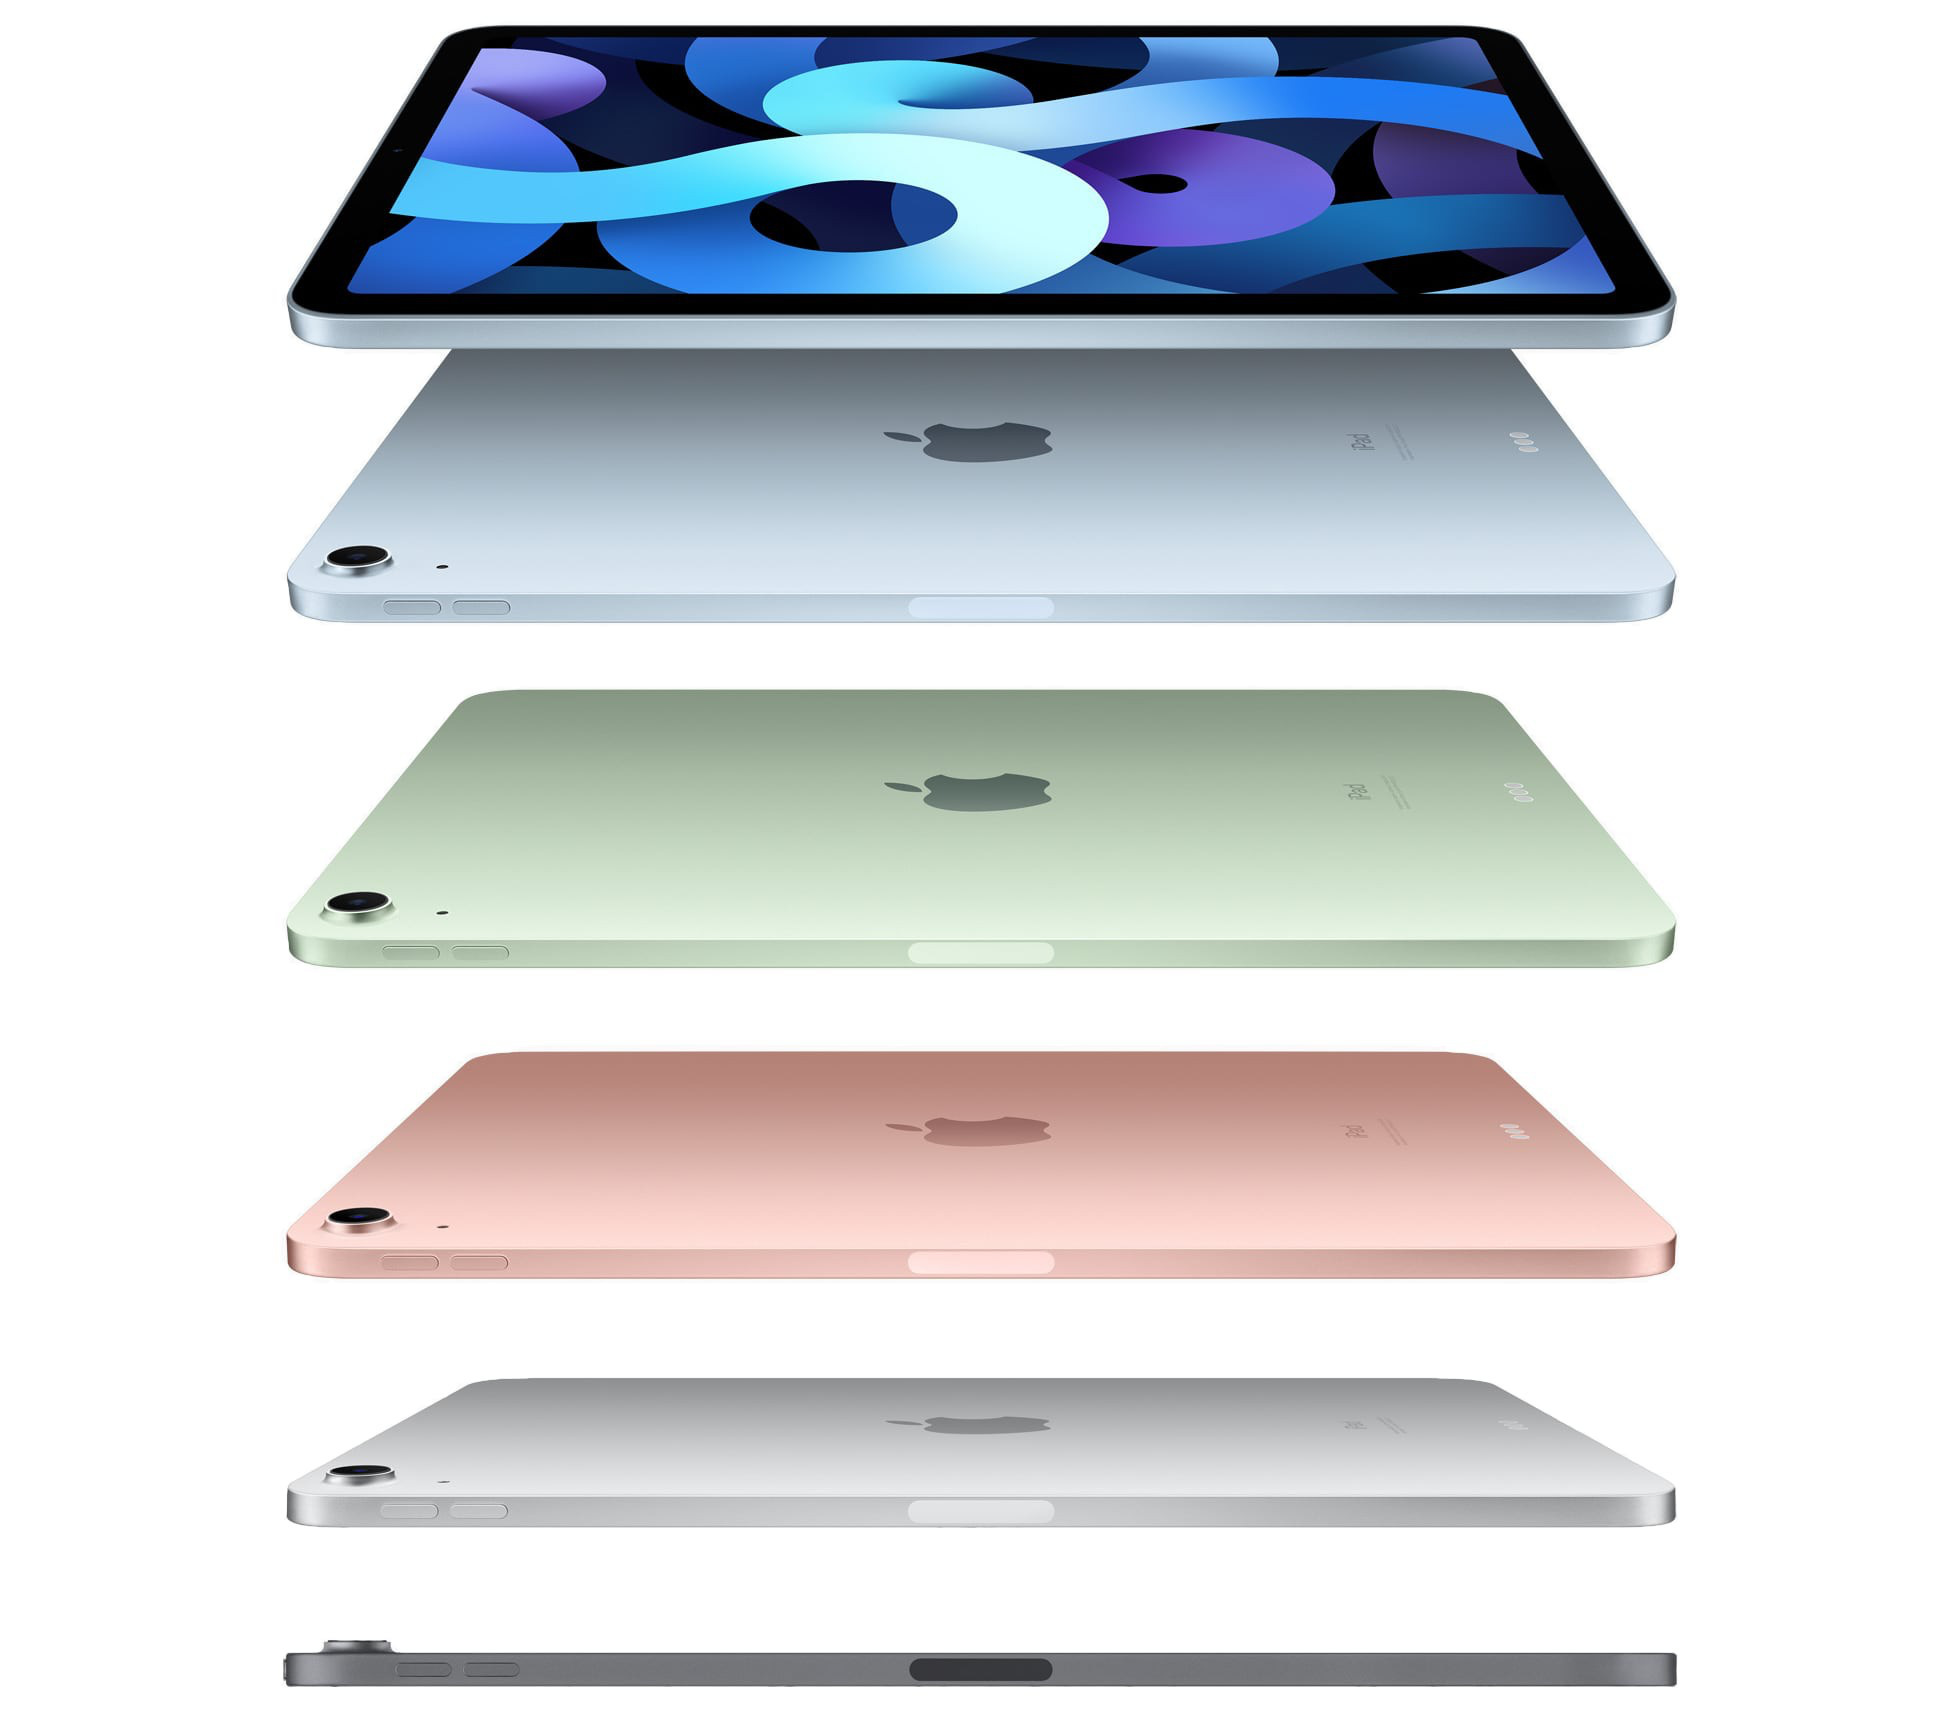 新款iPad Air已经到货苹果零售店：只待上市日期公布